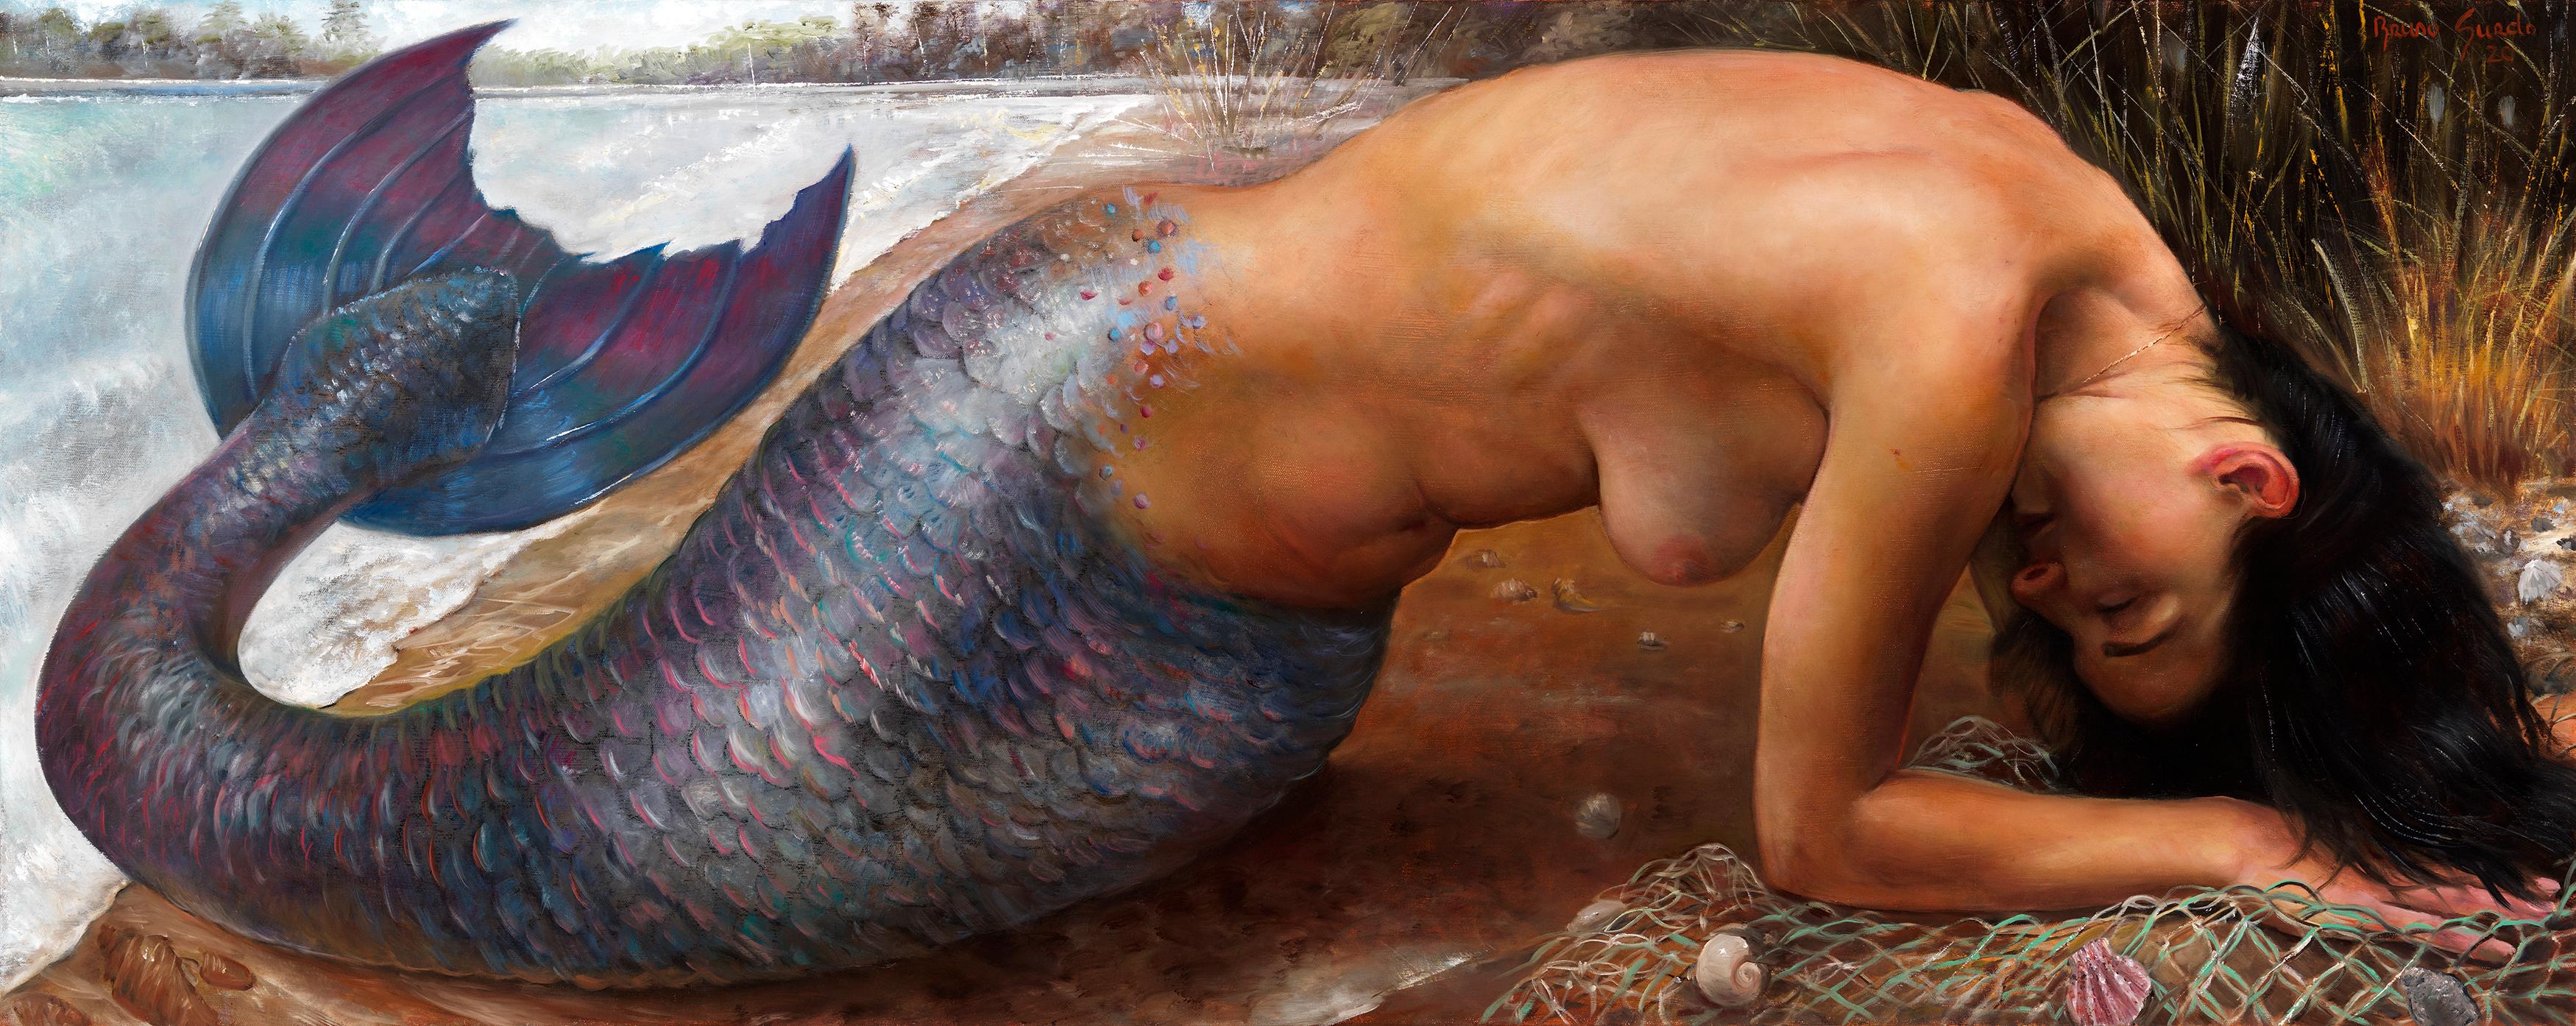 Bruno Surdo Nude Painting - Submerged Mermaid - Dark Haired, Fair Skinned Mermaid Emerging From the Water